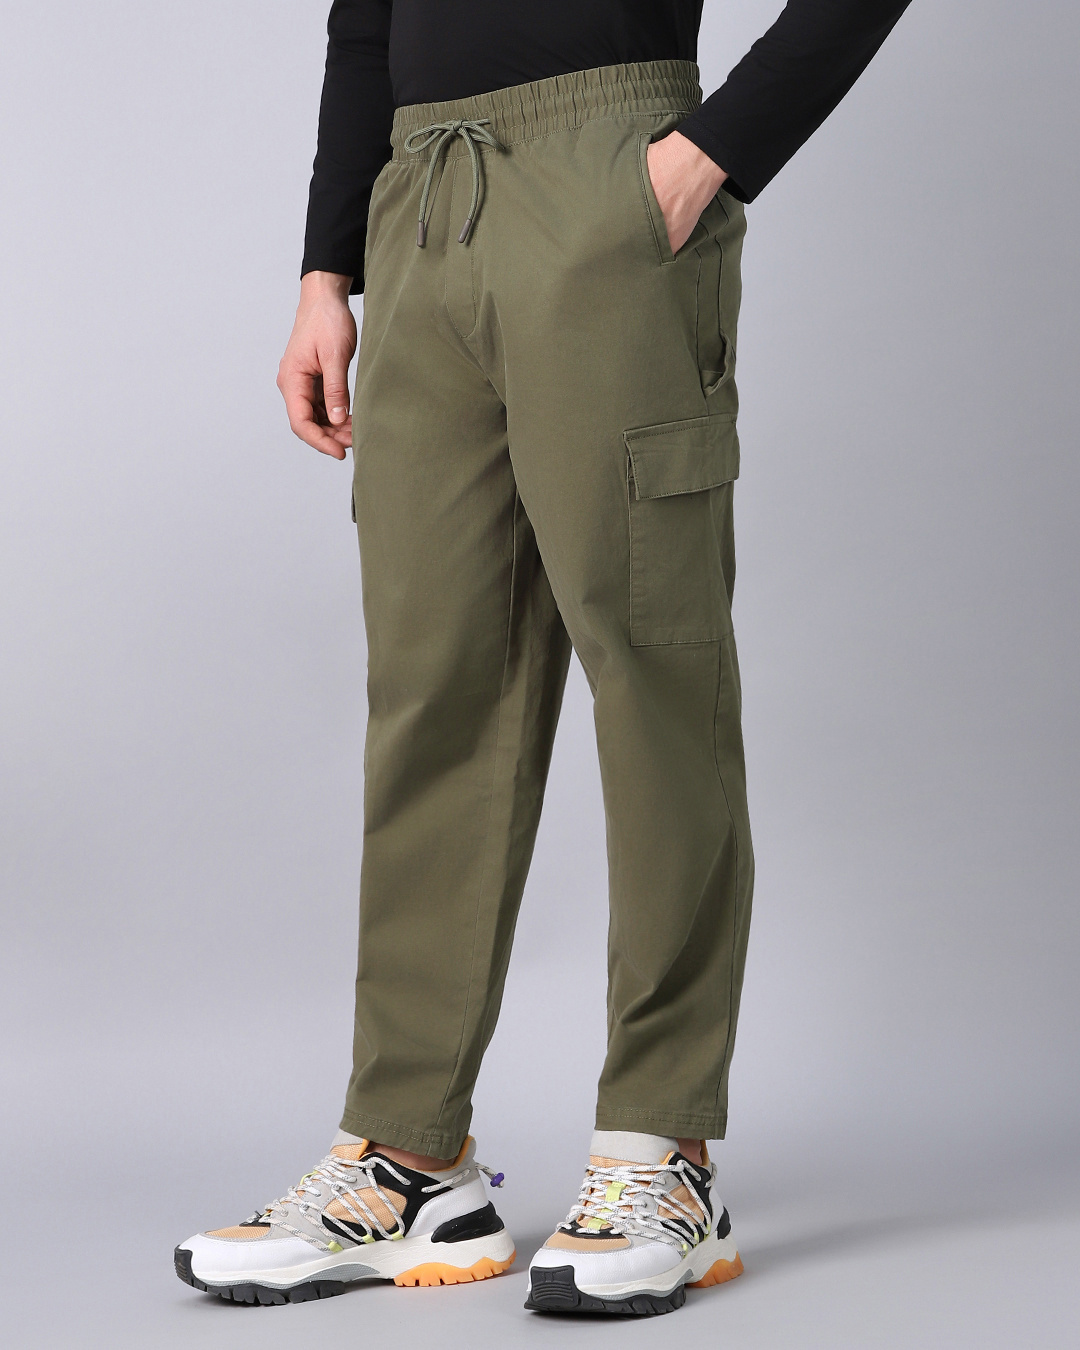 Buy Men's Dusty Olive Green Cargo Carpenter Pants Online at Bewakoof